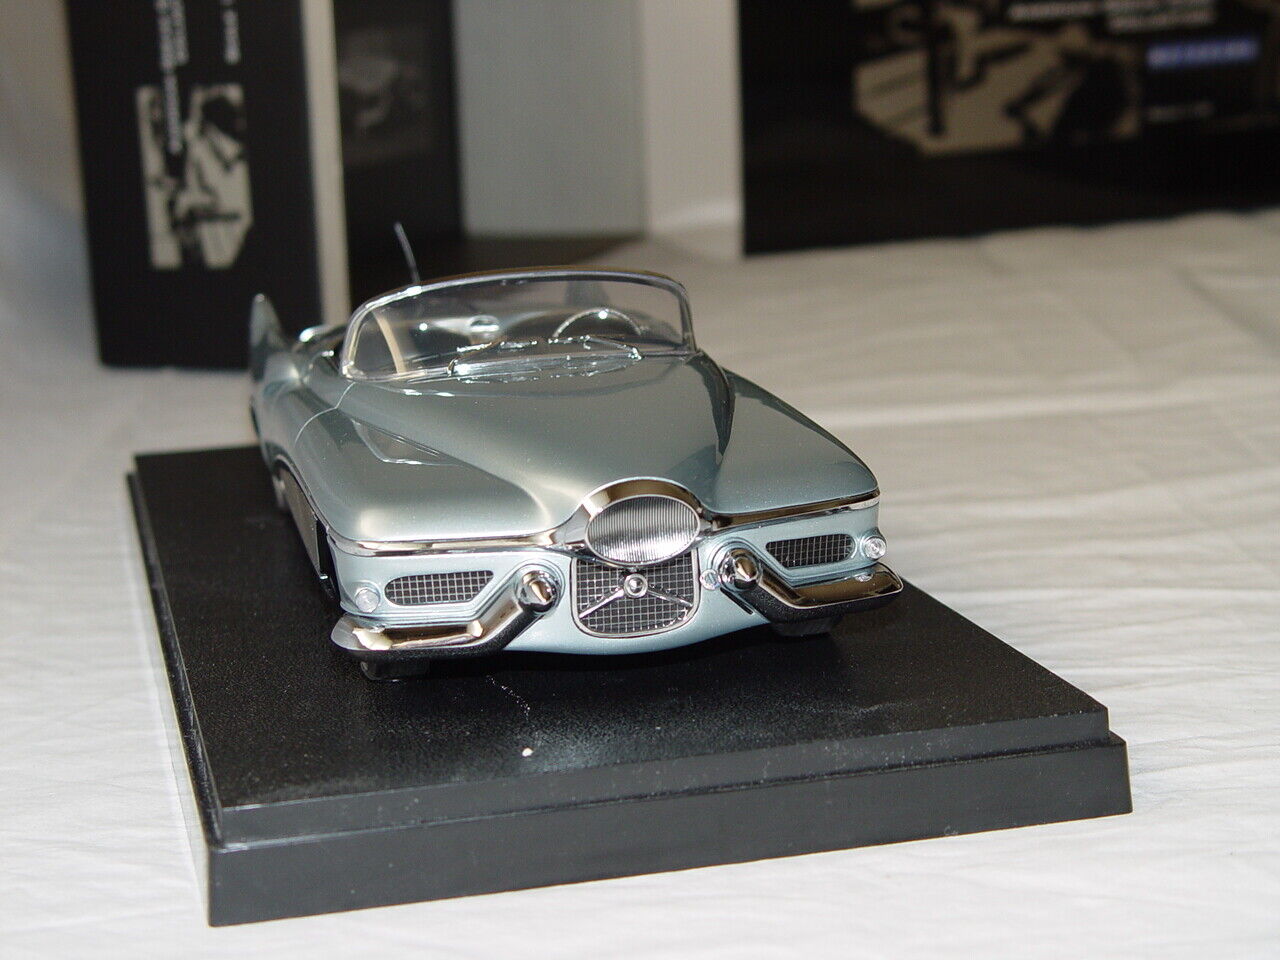 1:18 MINICHAMPS 1951 Buick Le Sabre Concept